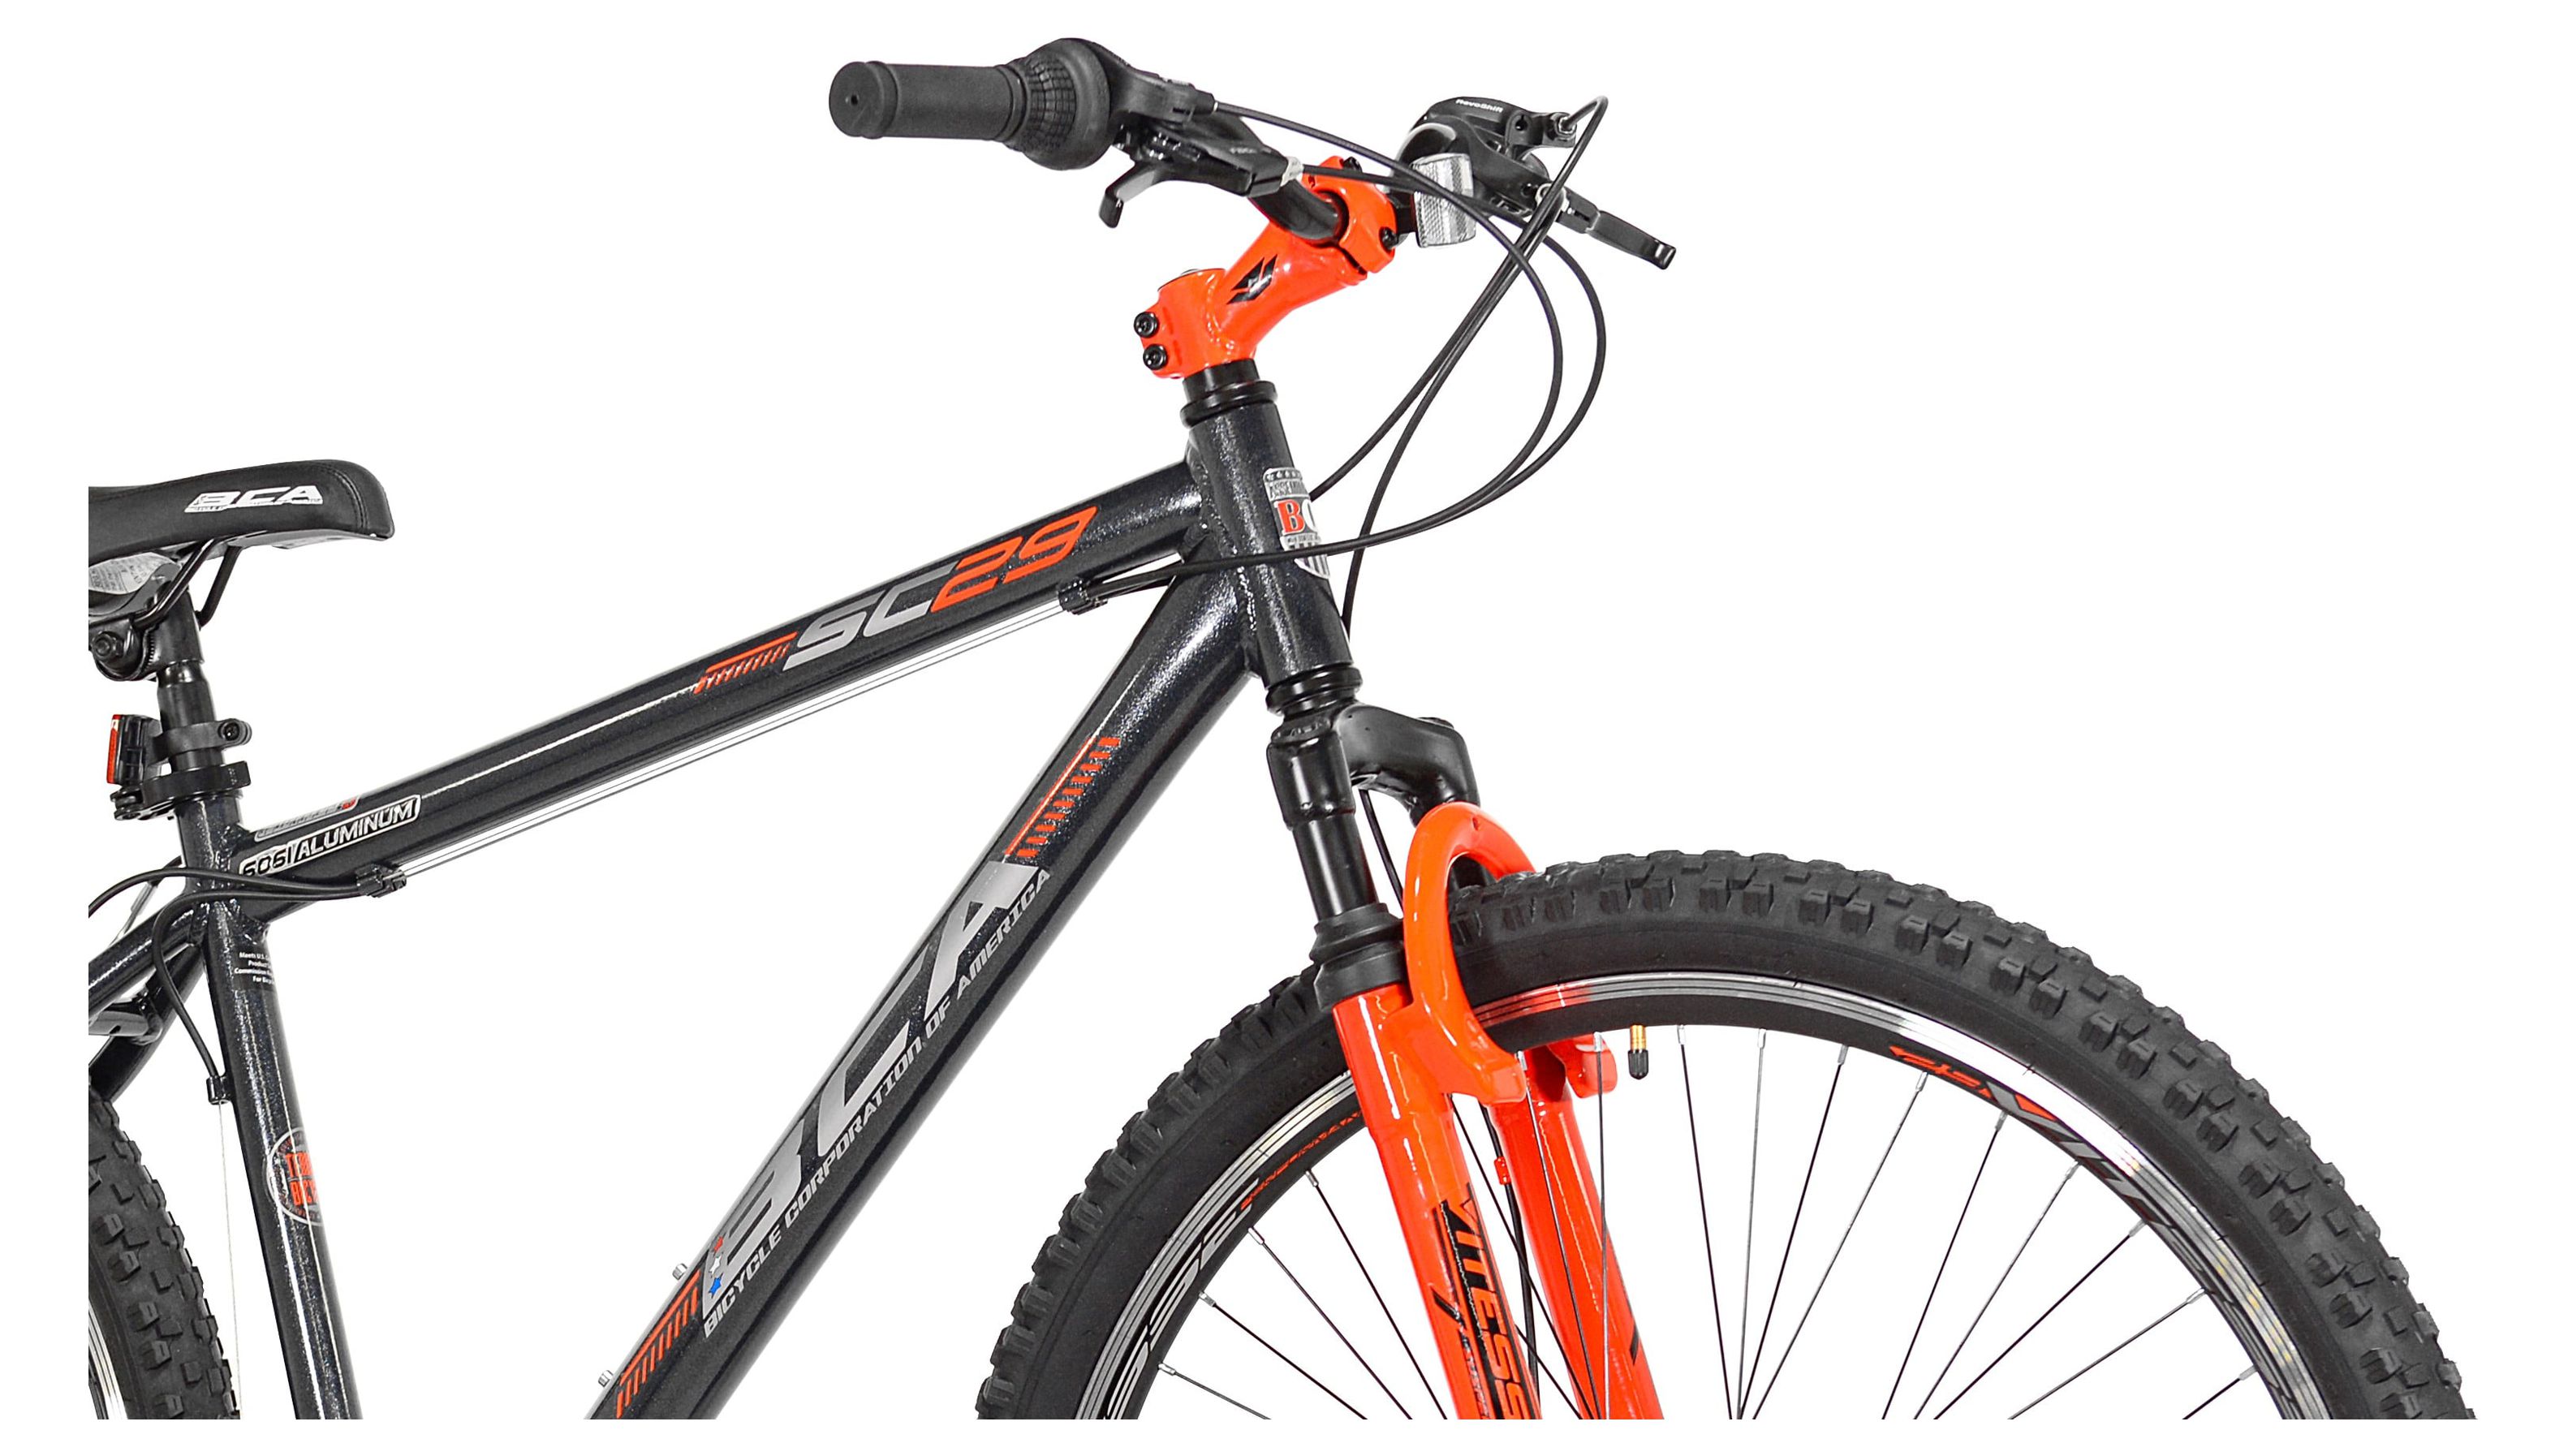 BCA 29" SC29 Mountain Bike, Gray/Orange - image 5 of 7